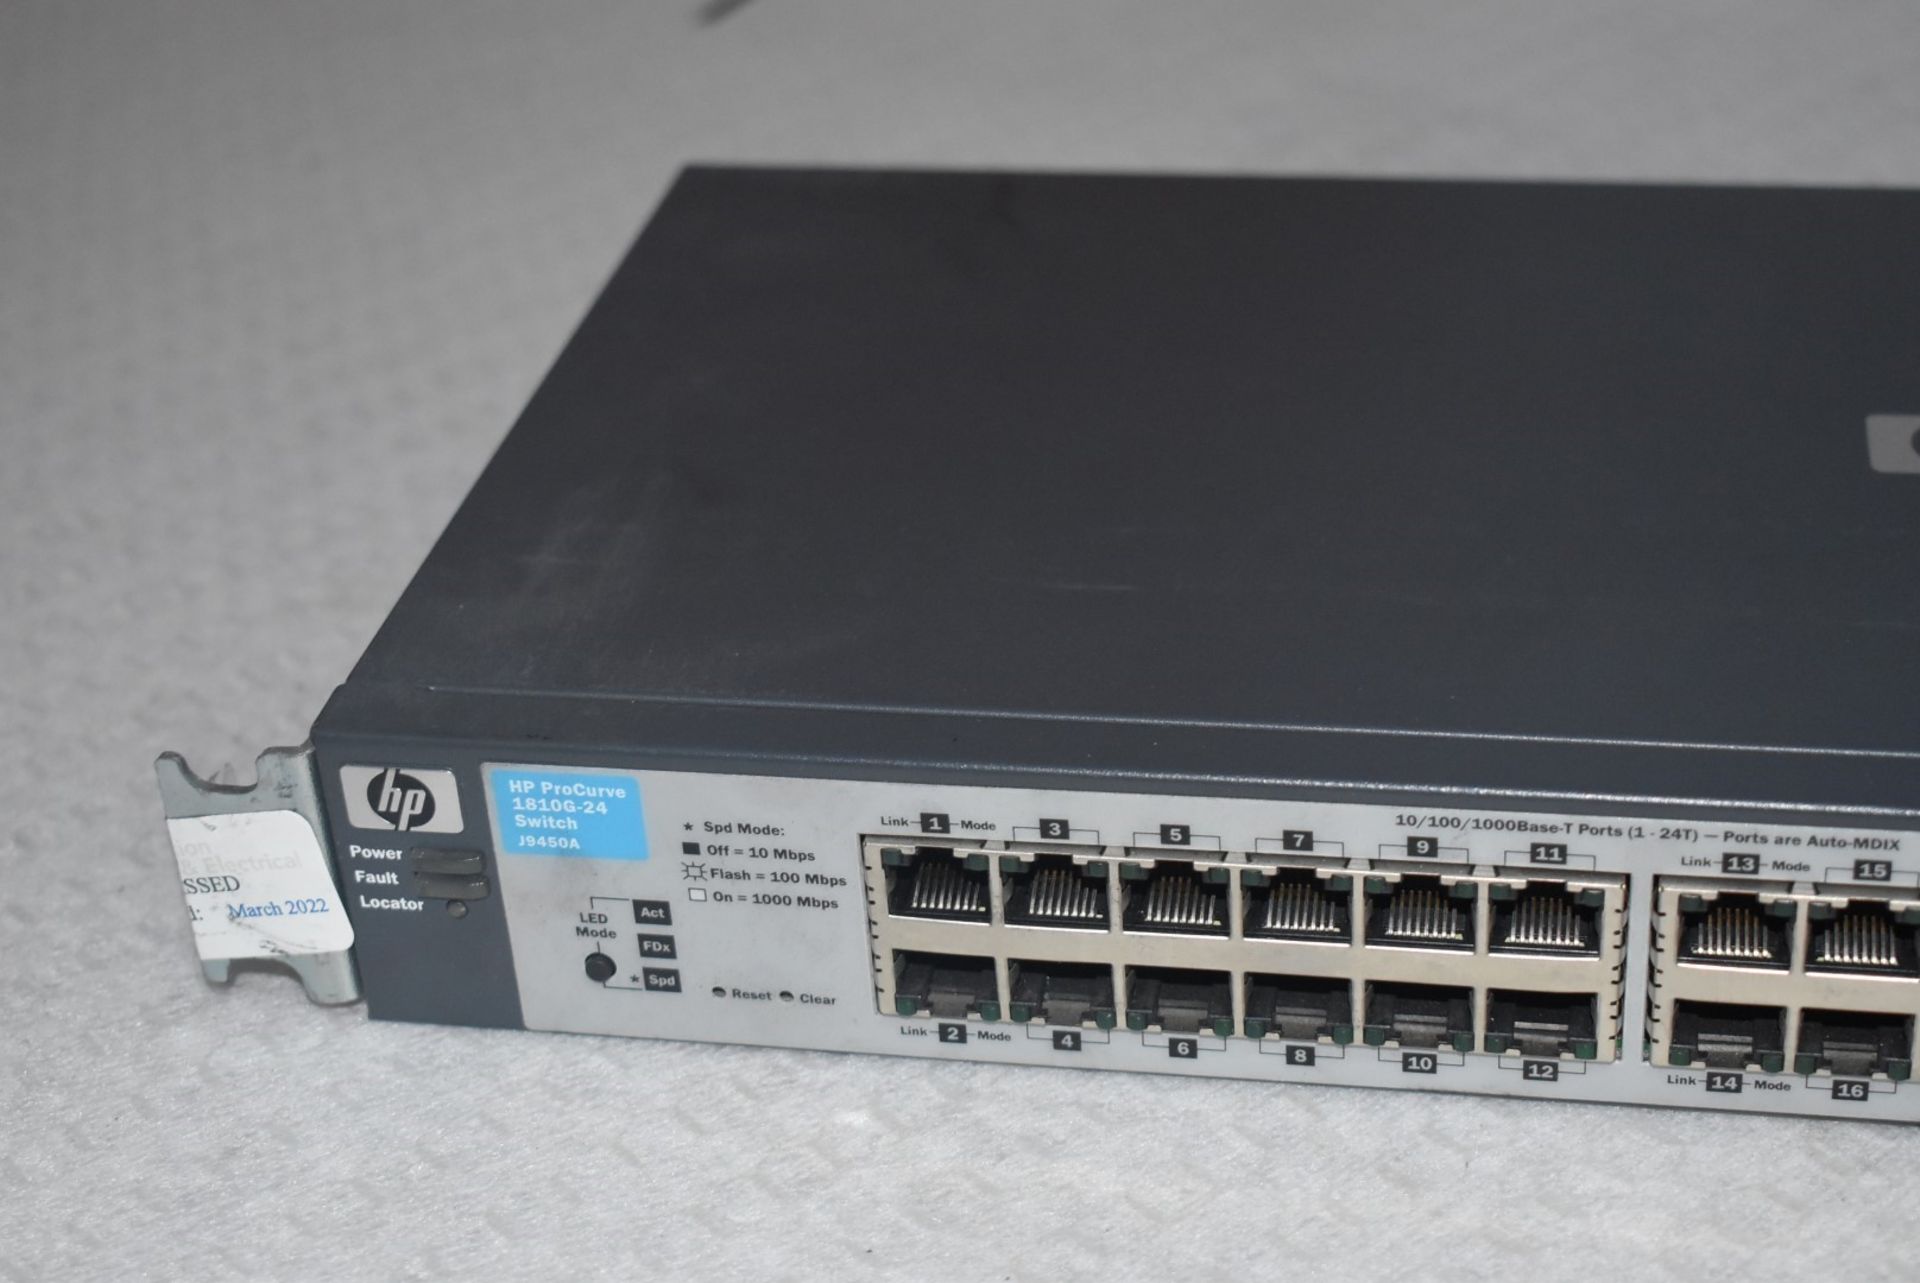 1 x HP Procurve 1810G 24 Port J9450A Switch - Image 4 of 6